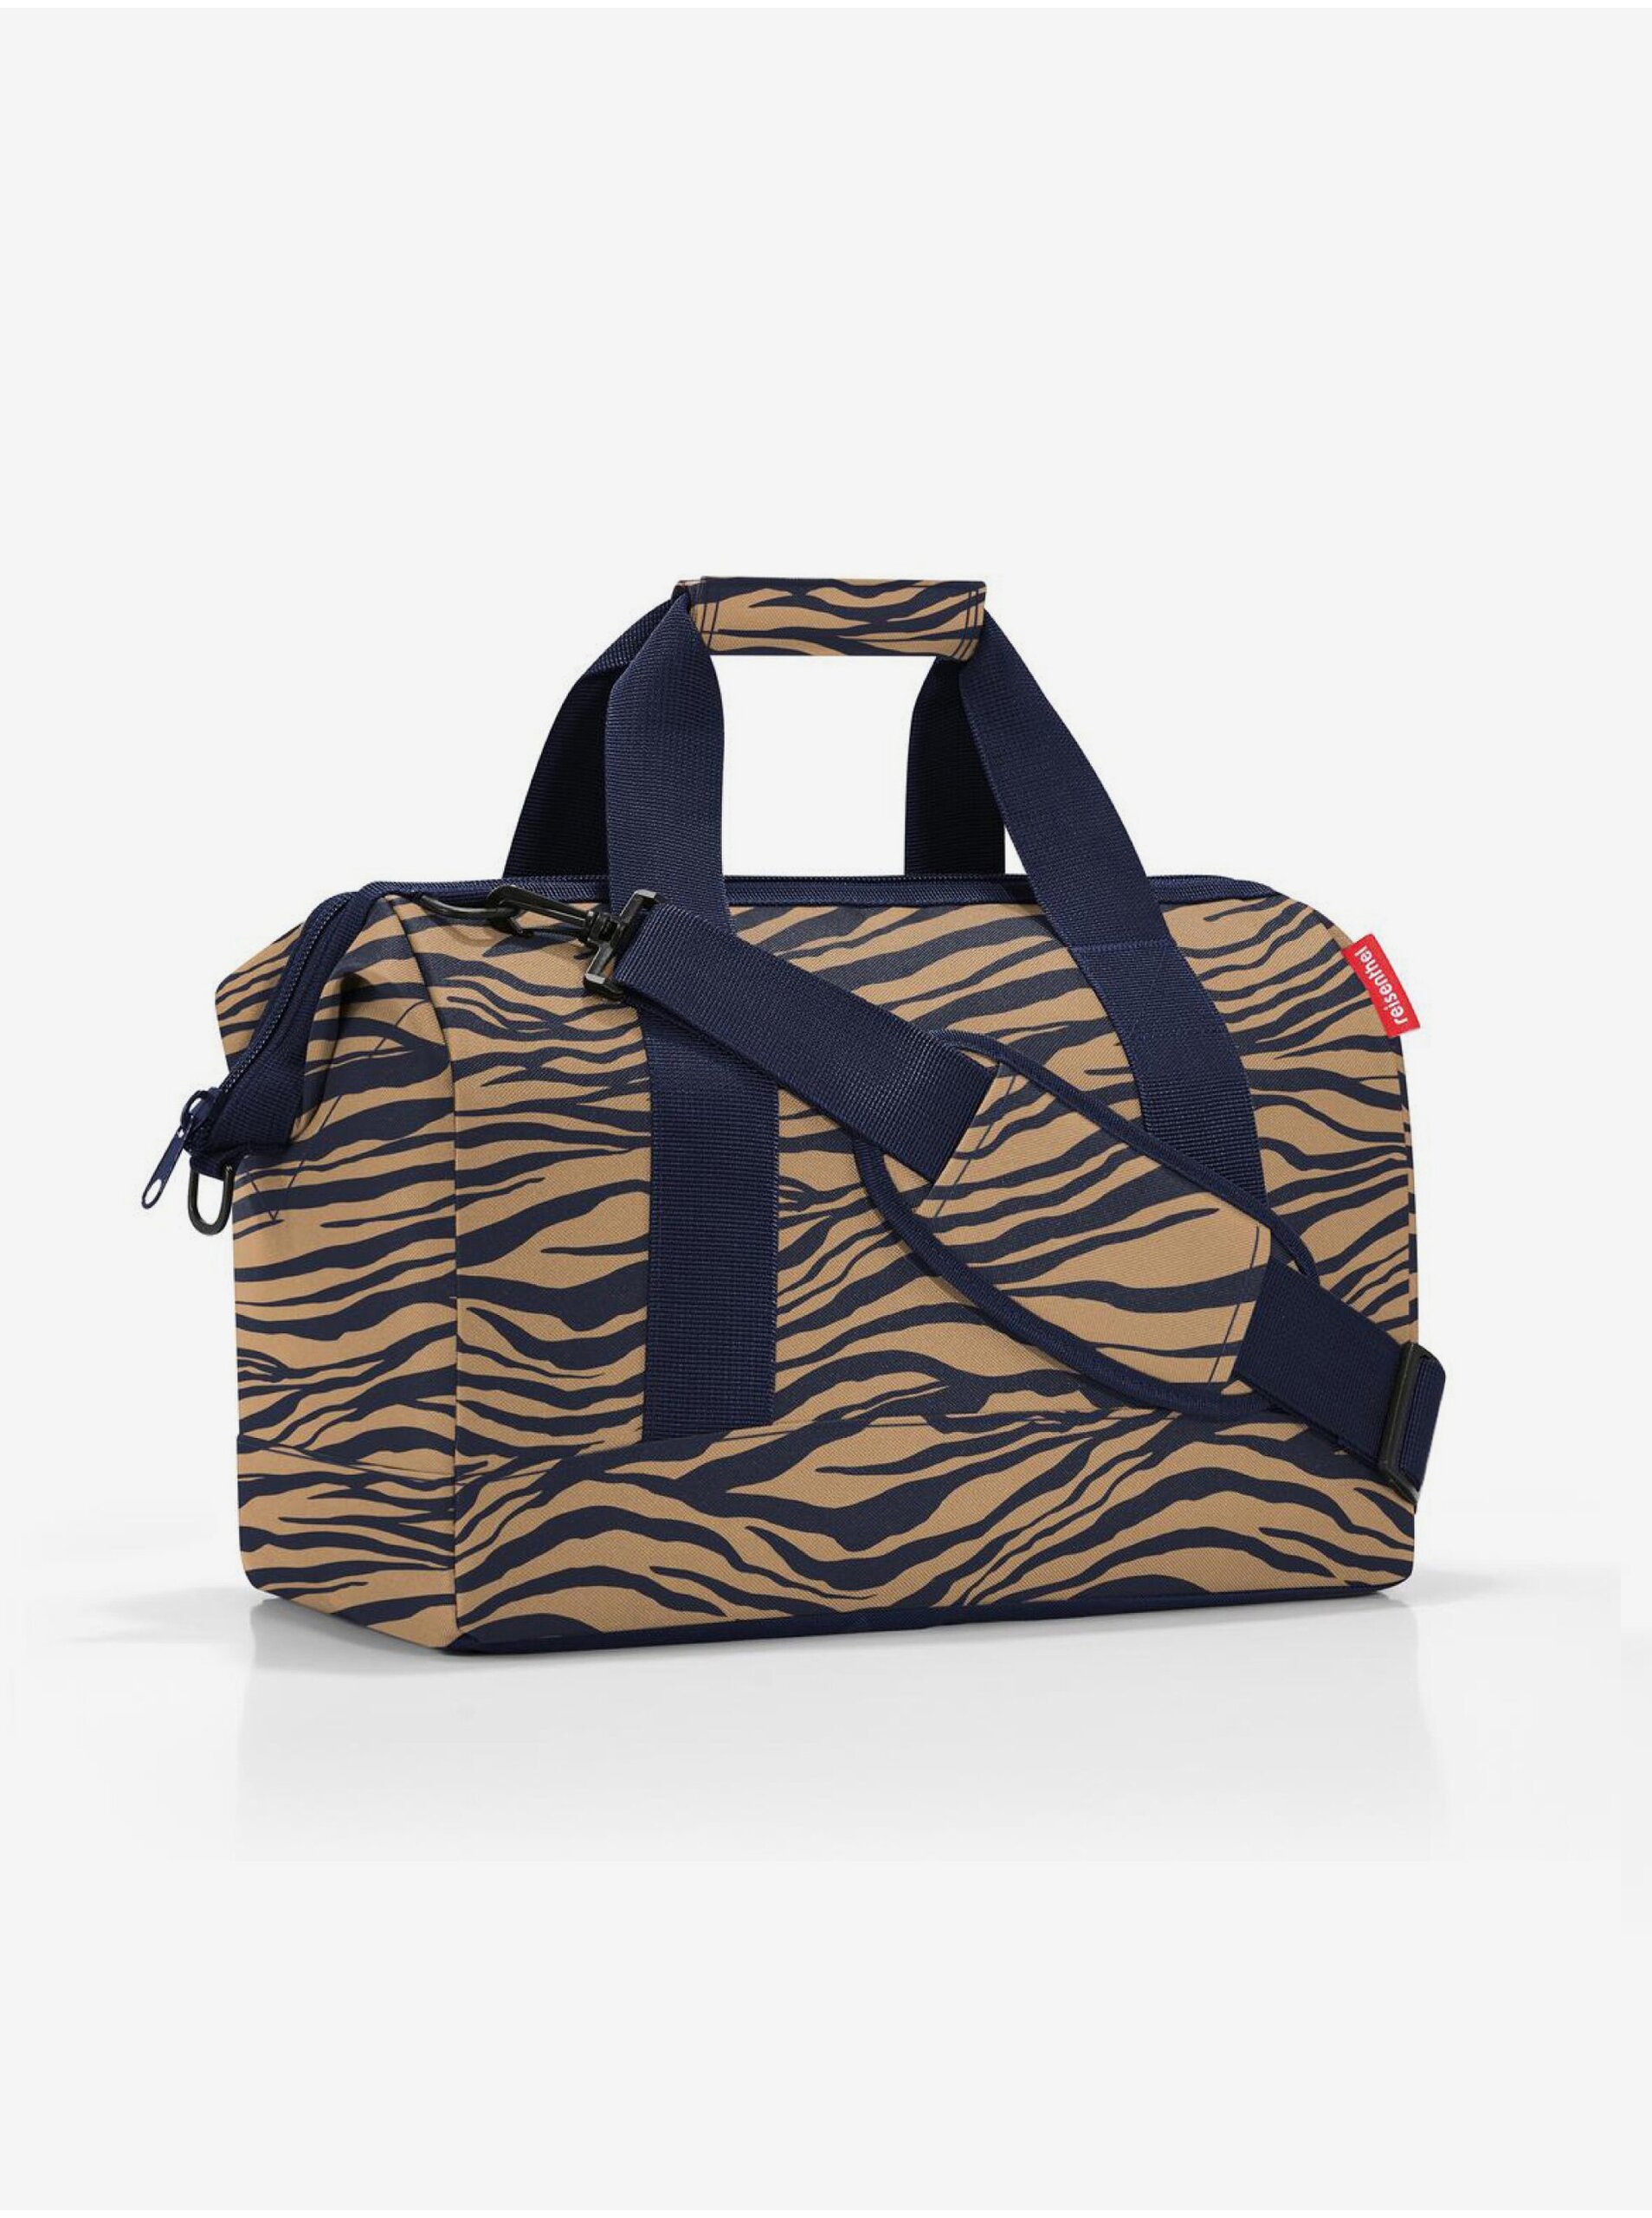 Levně Modro-hnědá dámská cestovní taška se zvířecím vzorem Reisenthel Allrounder M Sumatra